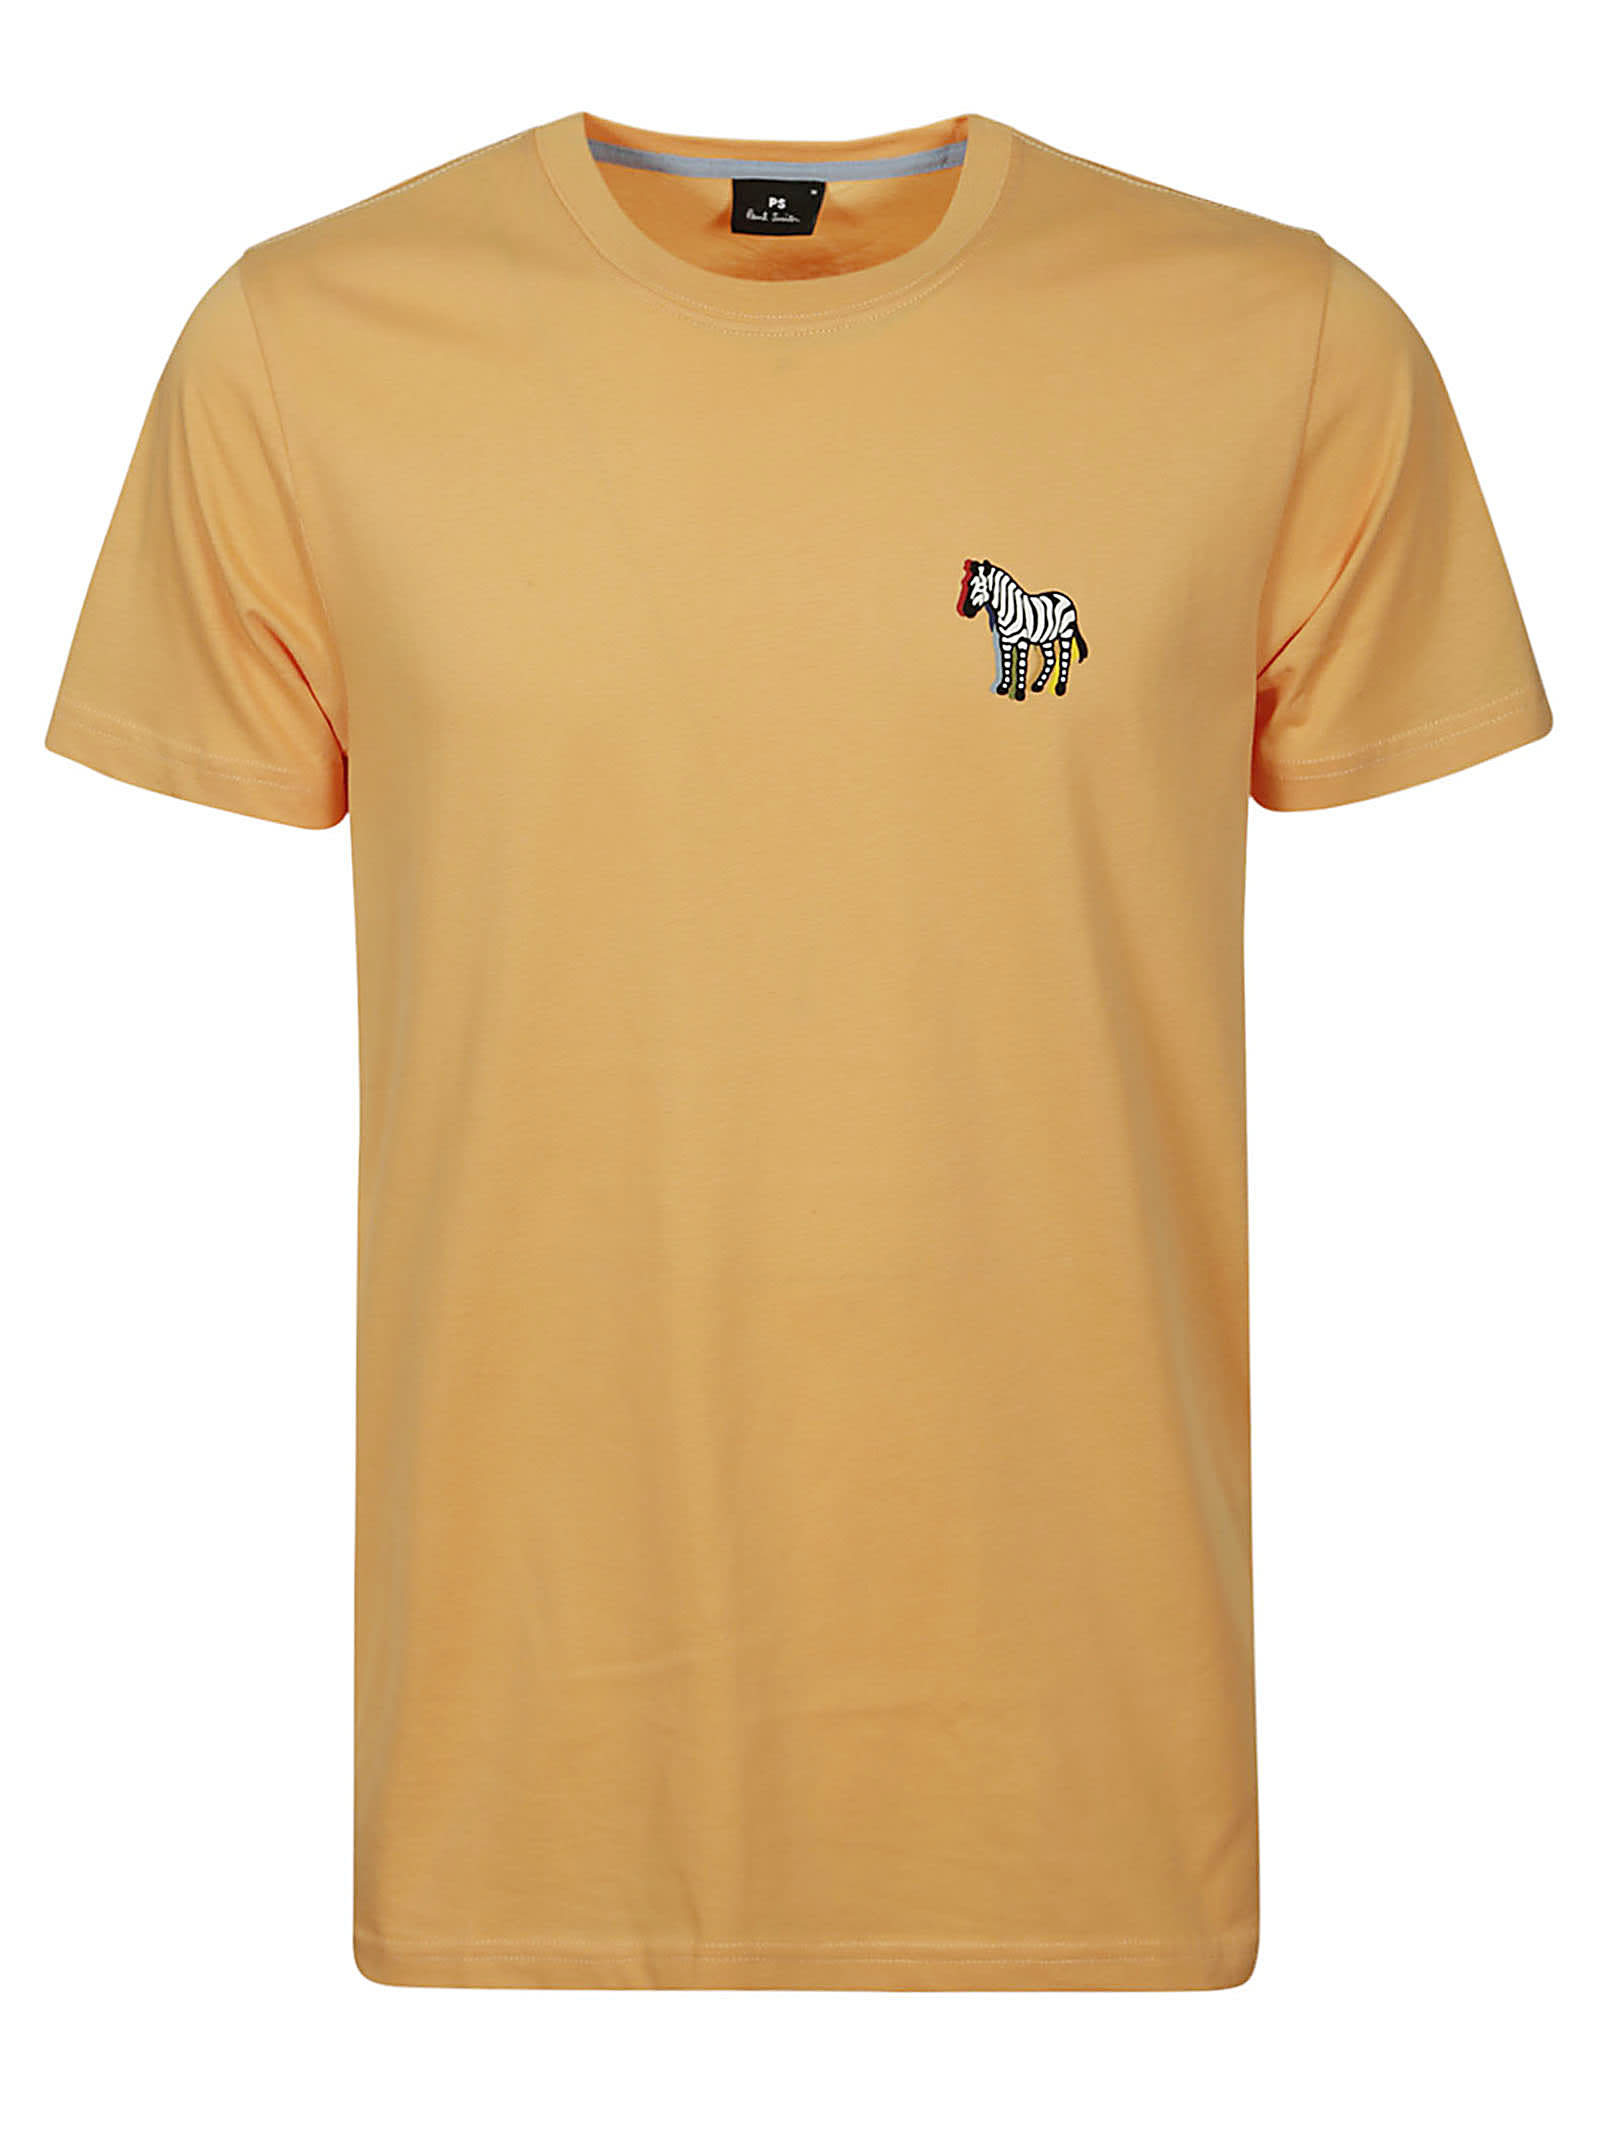 Paul Smith Slim Fit T-shirt B&w Zebra In A Orange